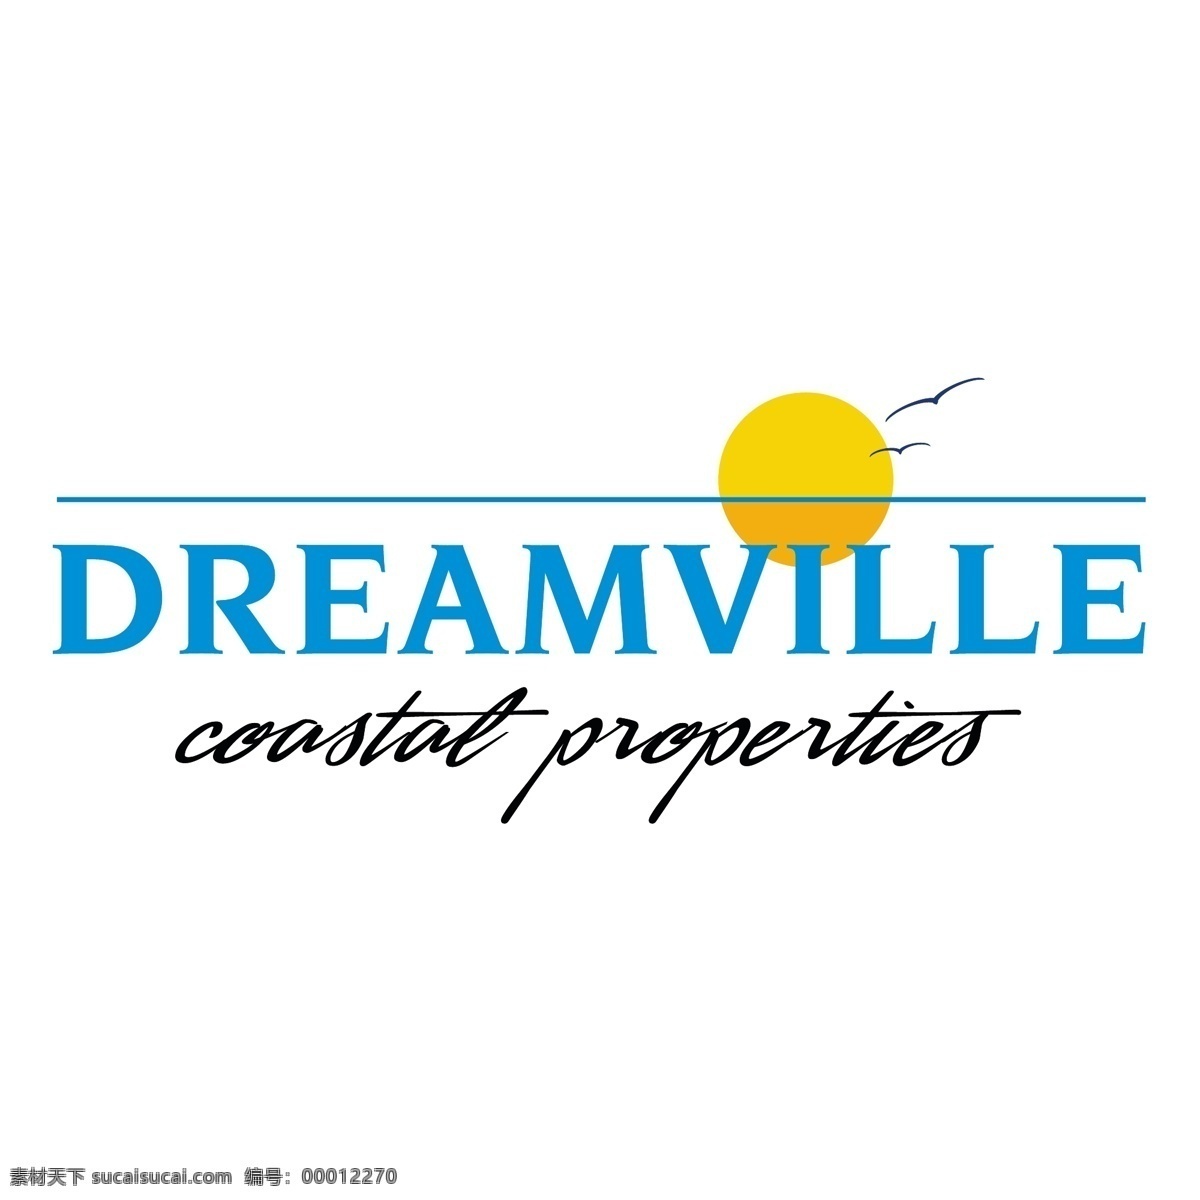 dreamville 公司 公司logo 公司标志 公司标志设计 矢量 有限公司 公司eps logo 图像 国际 矢量有限公司 创新公司 有限责任公司 向量 建筑家居